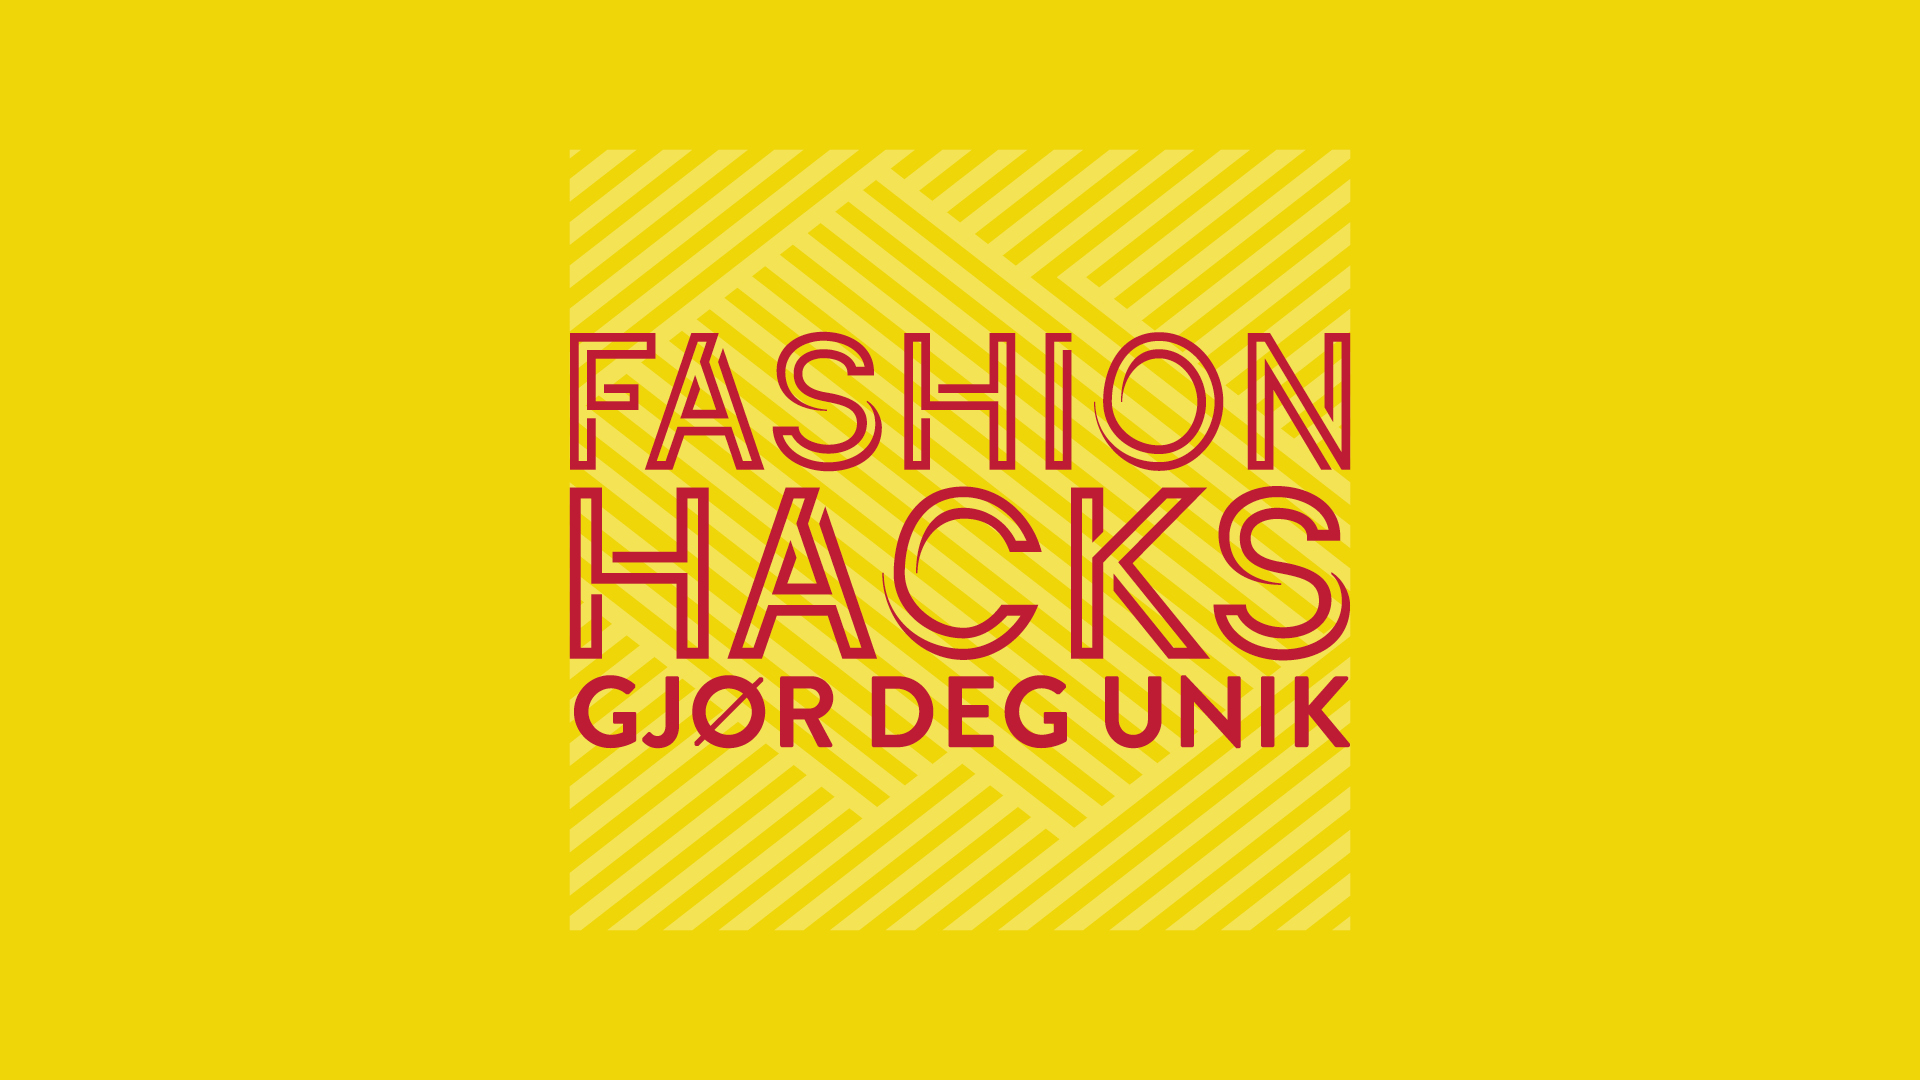 Fashion hacks